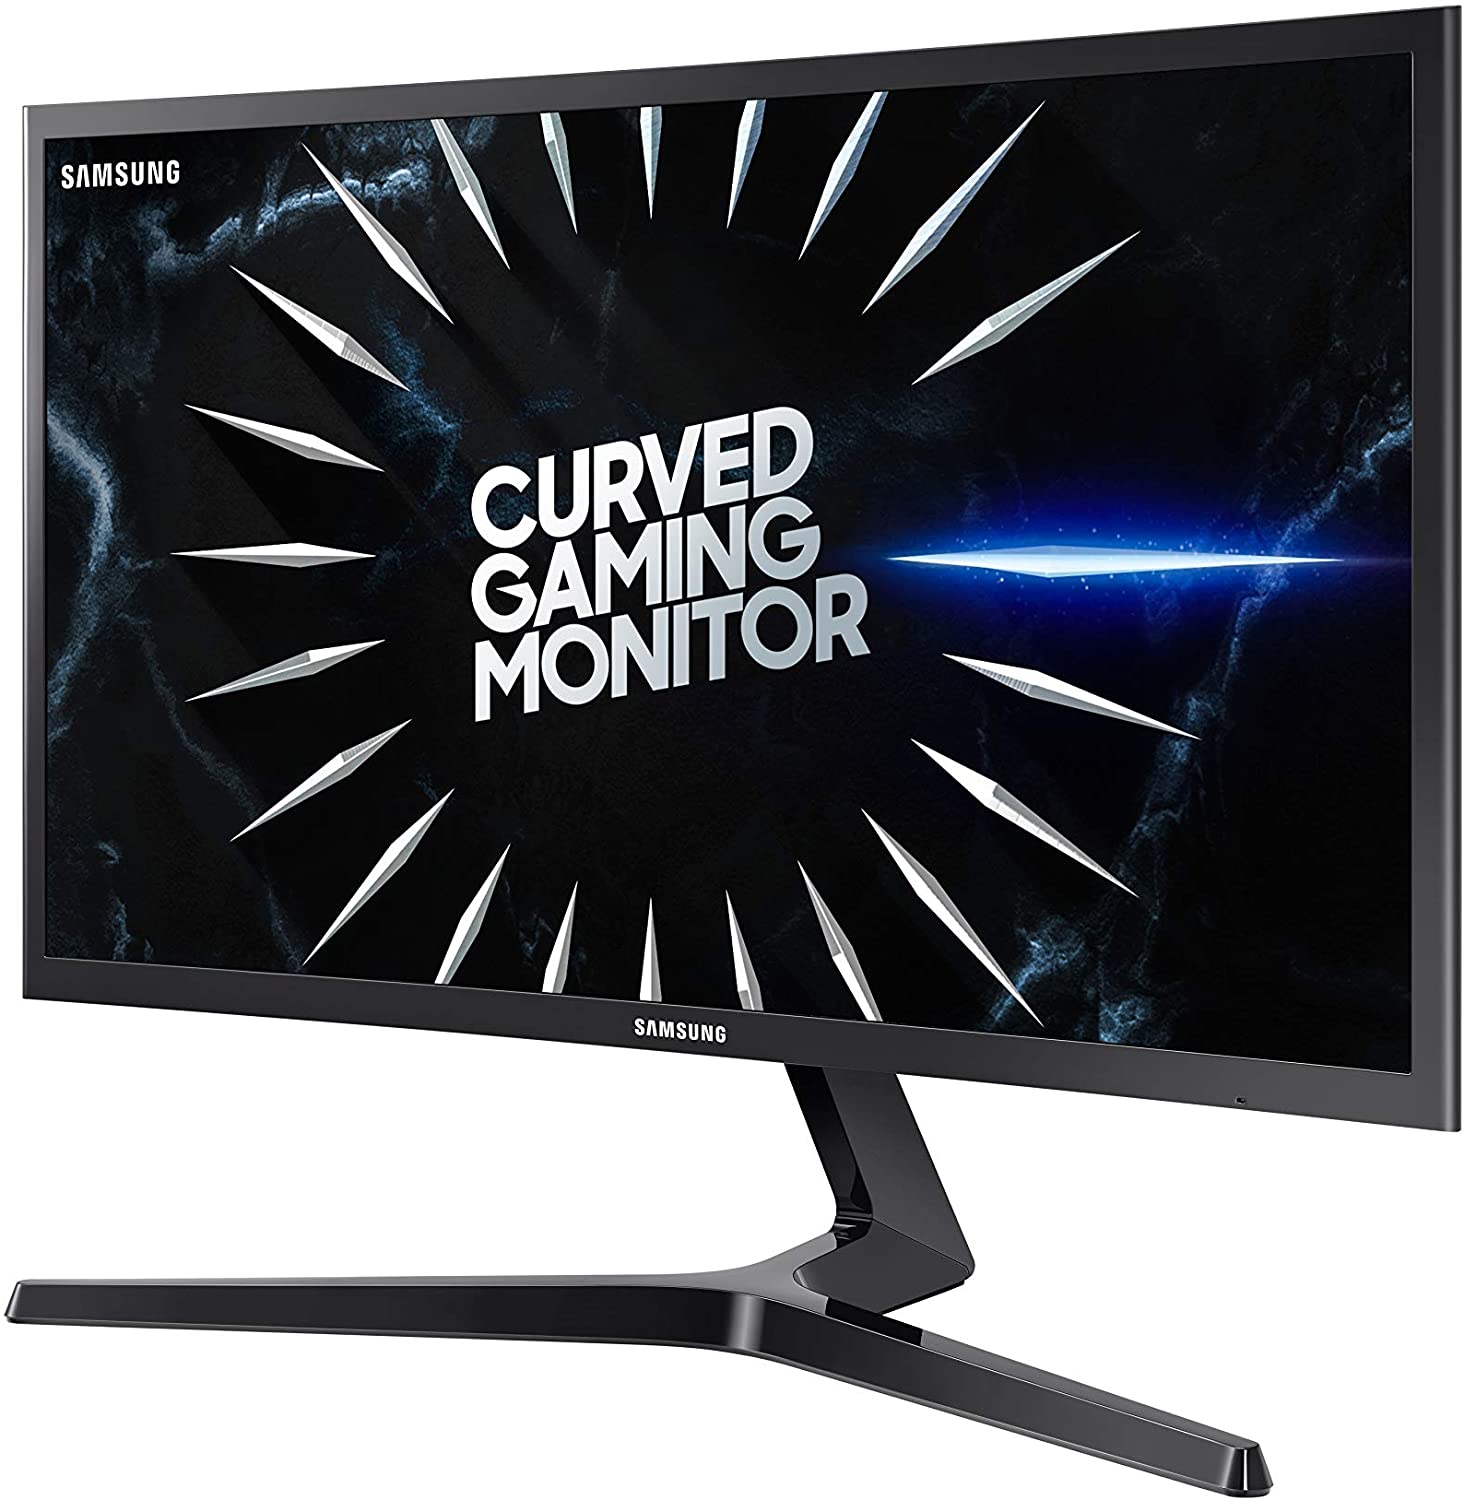 Samsung 24" FHD Curved Gaming Monitor 144Hz FreeSync C24RG50FQM 